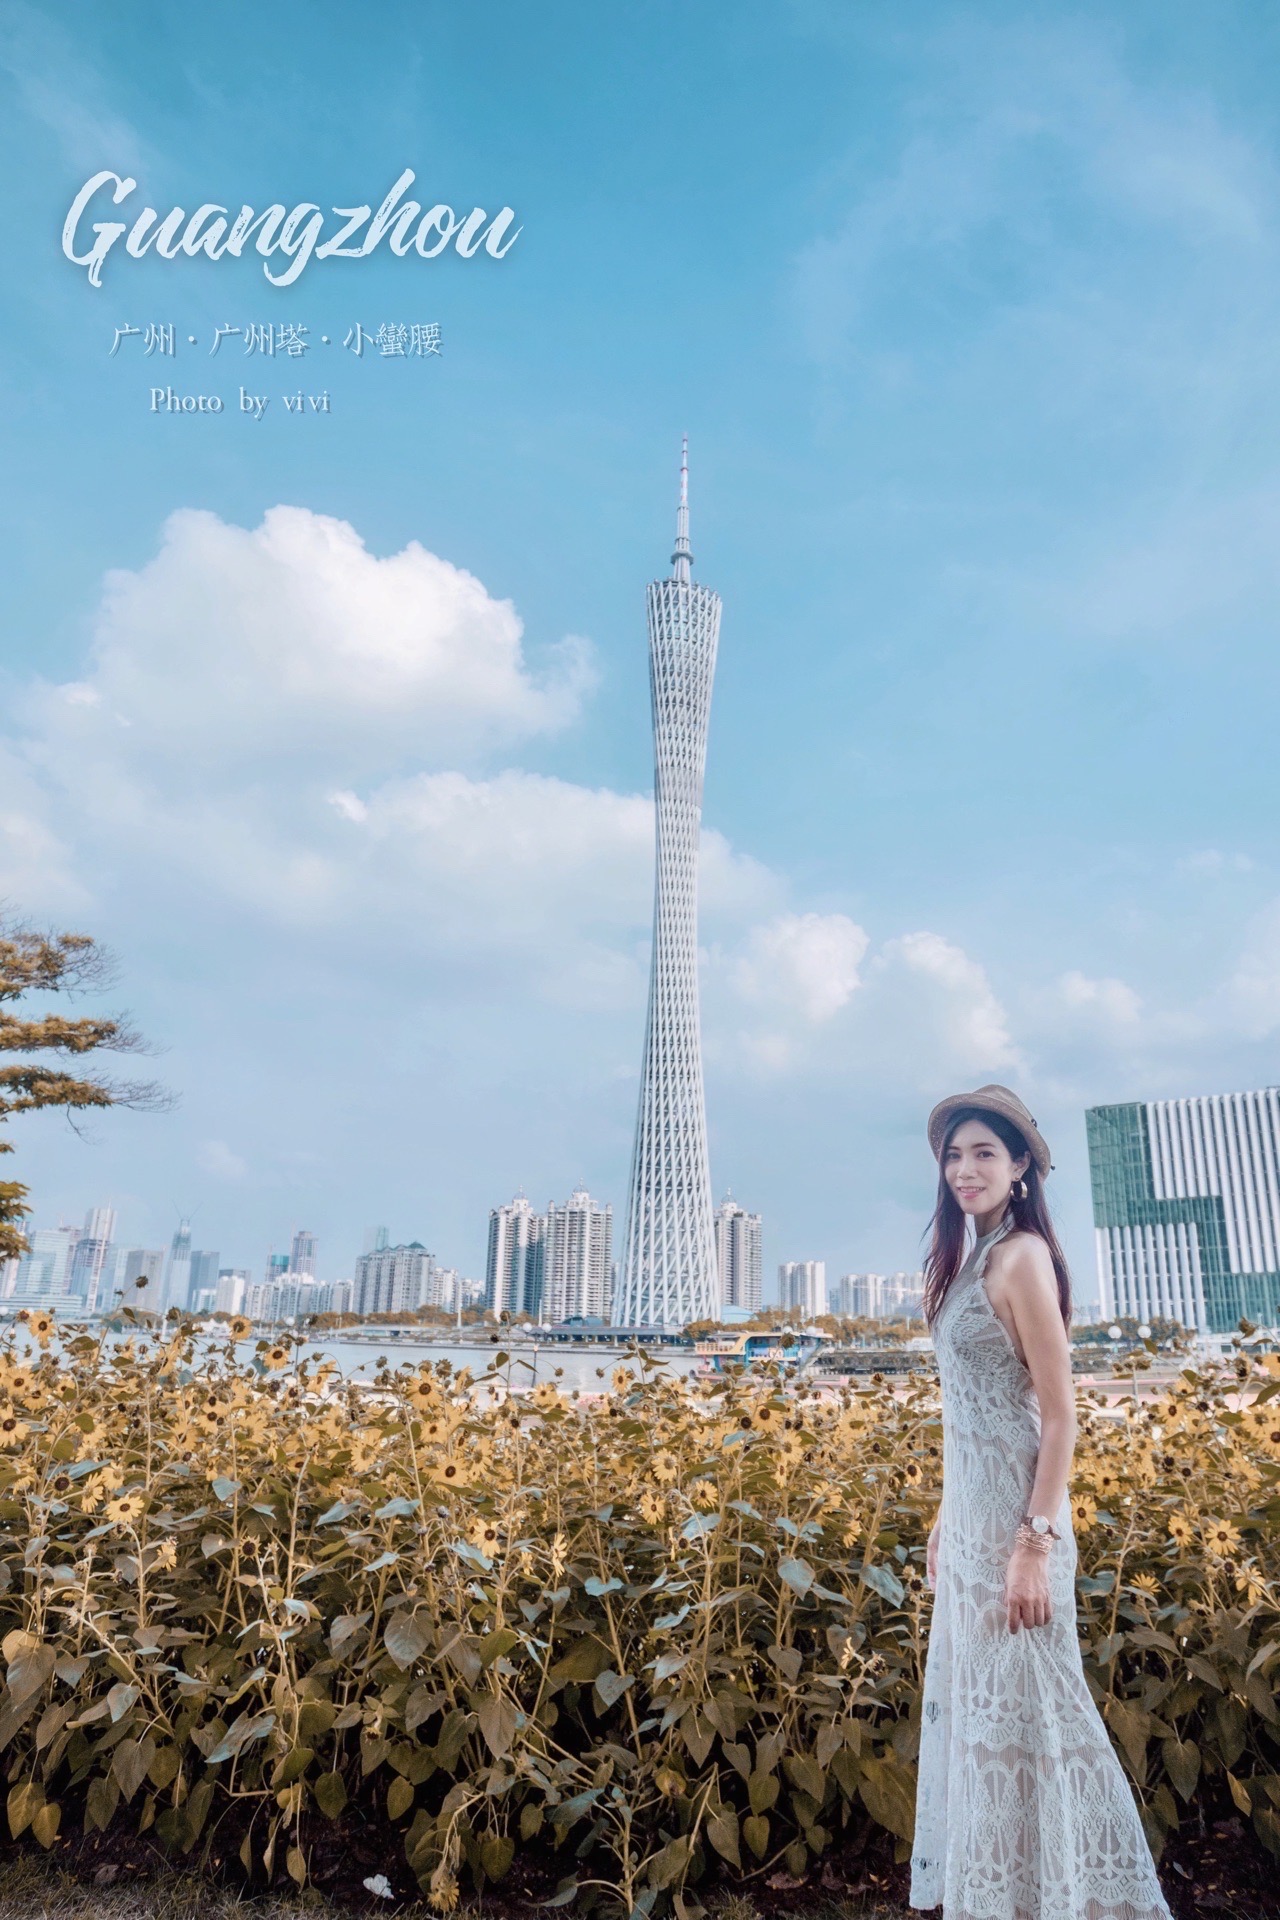 与 广州塔 合影最佳打卡点，大片向日葵🌻开得正美 🌻要看清接近500米的广州塔并不容易，虽然广州塔苗